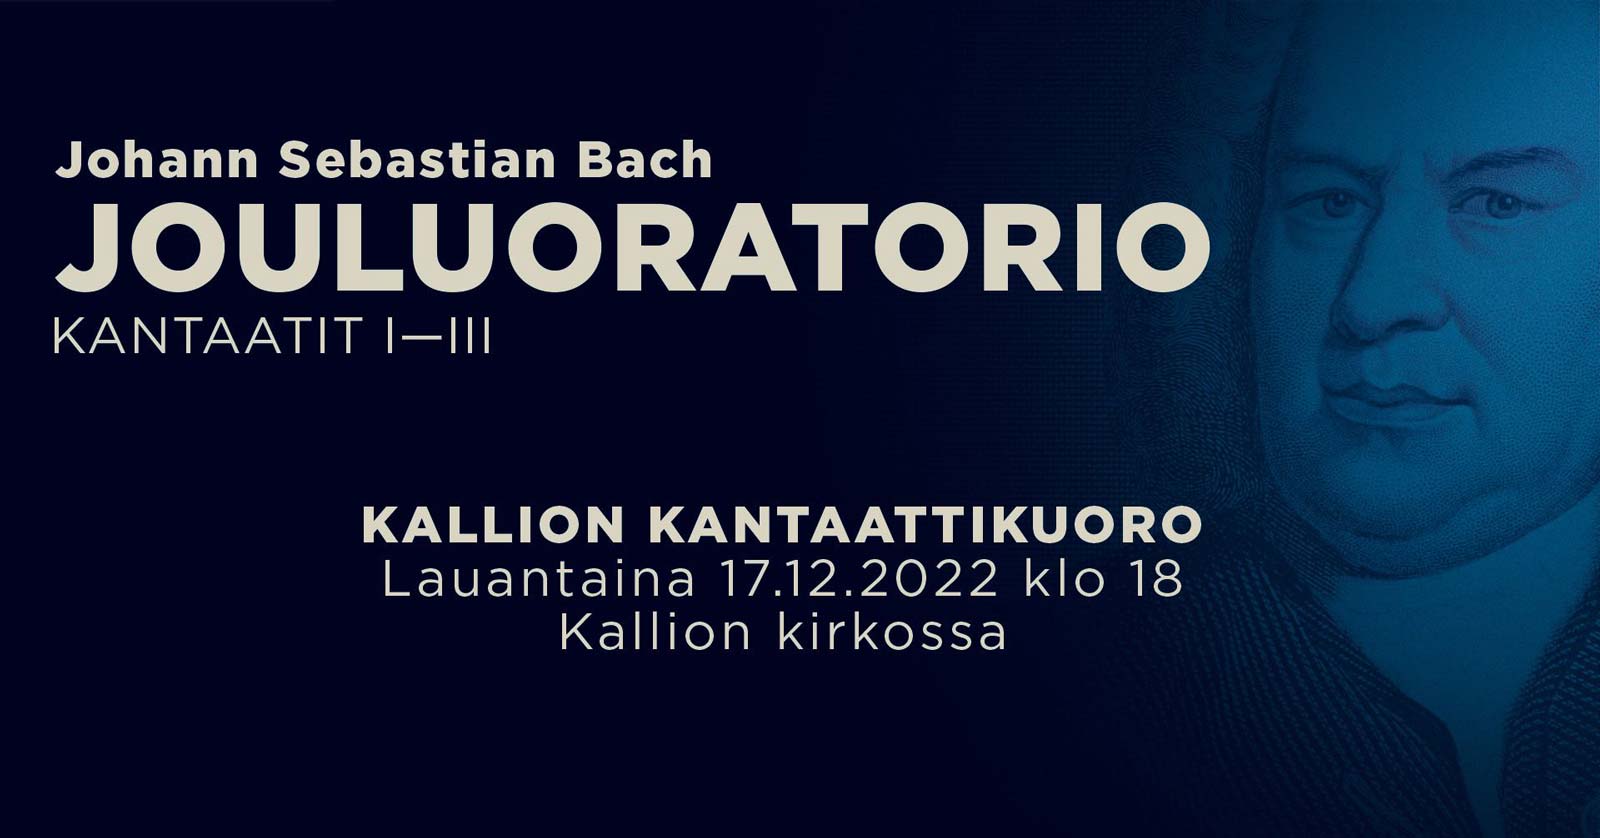 J. S. Bach:Jouluoratorio, kantaatit 1-3, Kallion Kantaattikuoro lauantaina 17. joulukuuta 2022 klo 18 Kallion Kirkossa